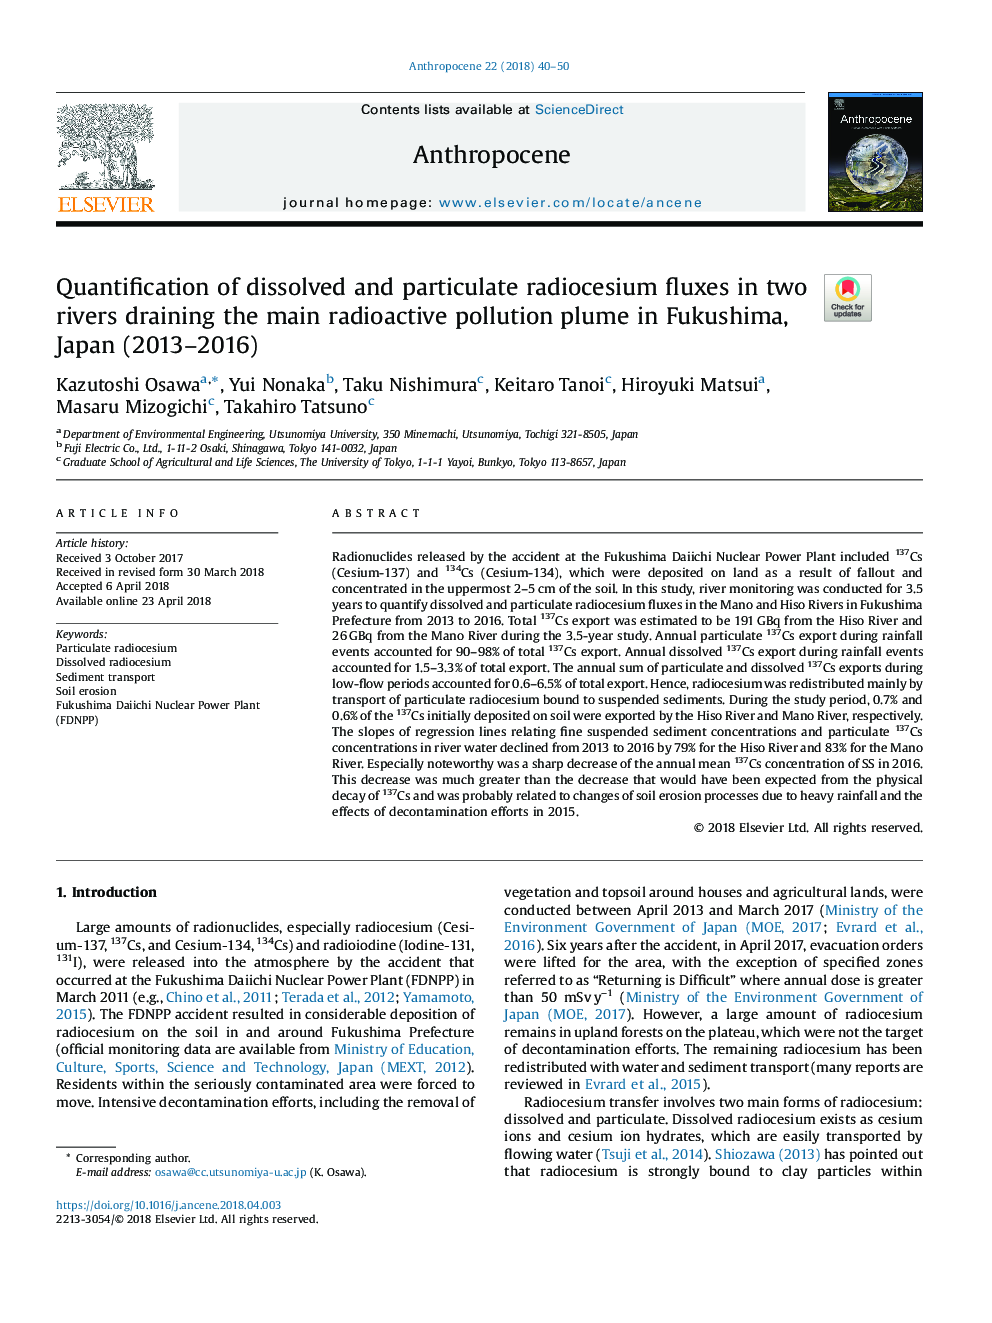 کوانتیزه کردن جیوه های حل شده و ذرات ریخته گری در دو رودخانه تخلیه اصلی آلودگی رادیواکتیو در فوکوشیما، ژاپن (2013-2016) 